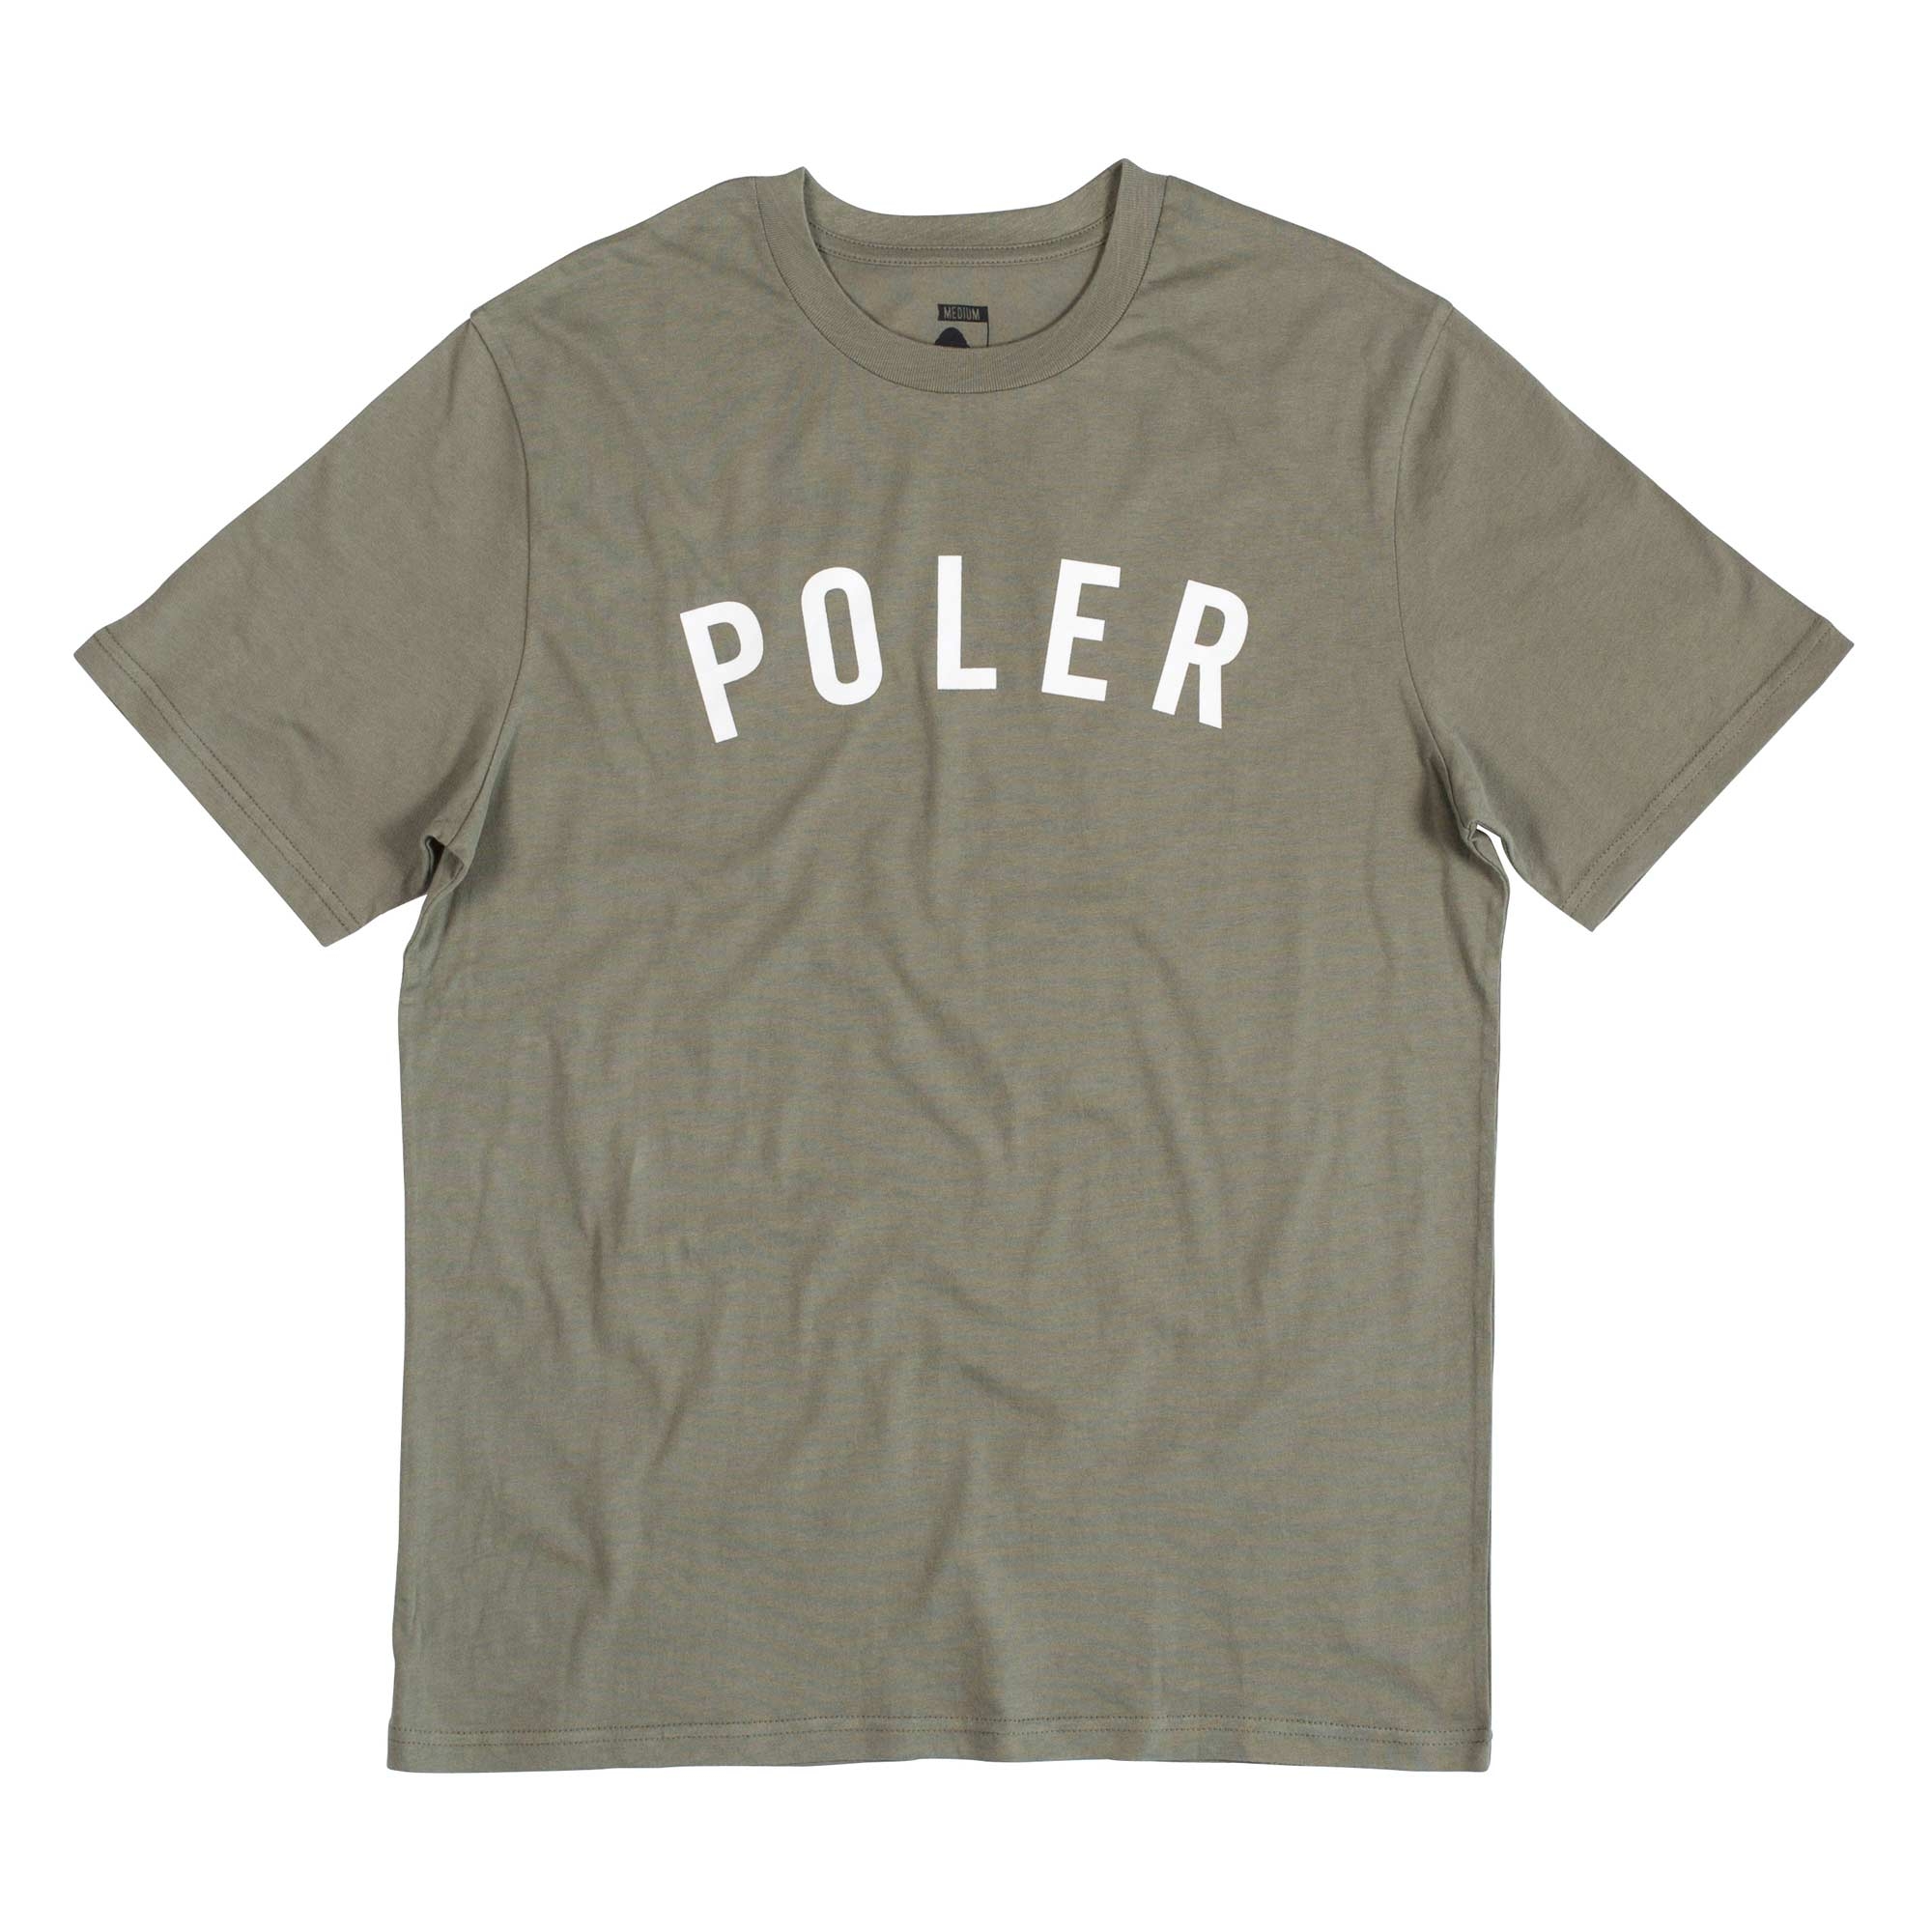 POLER T-Shirt STATE, olive